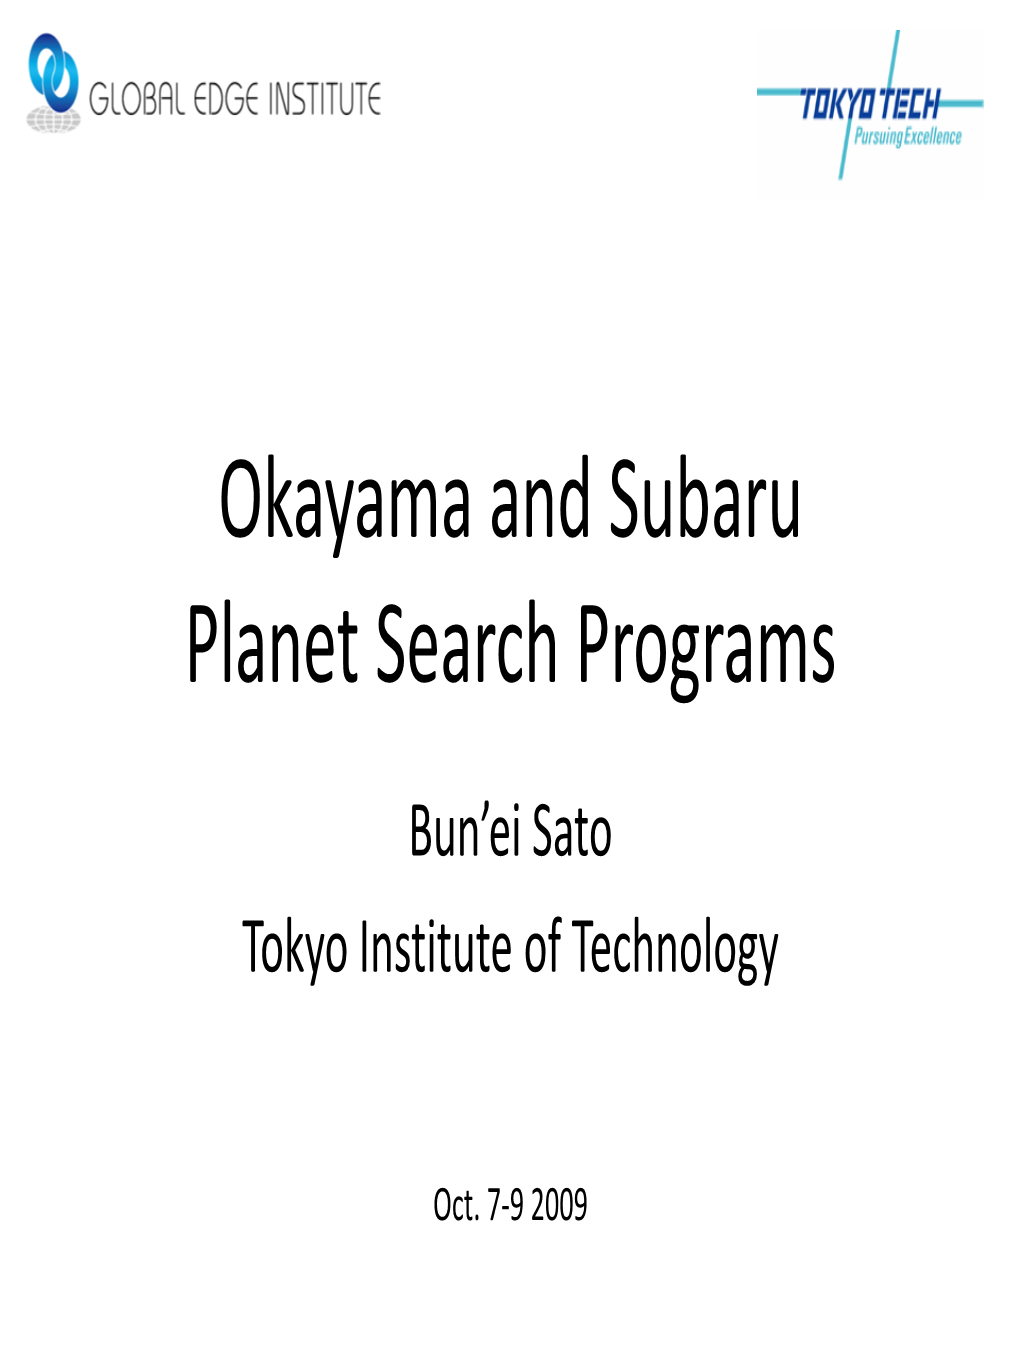 Okayama and Subaru Planet Search Programs